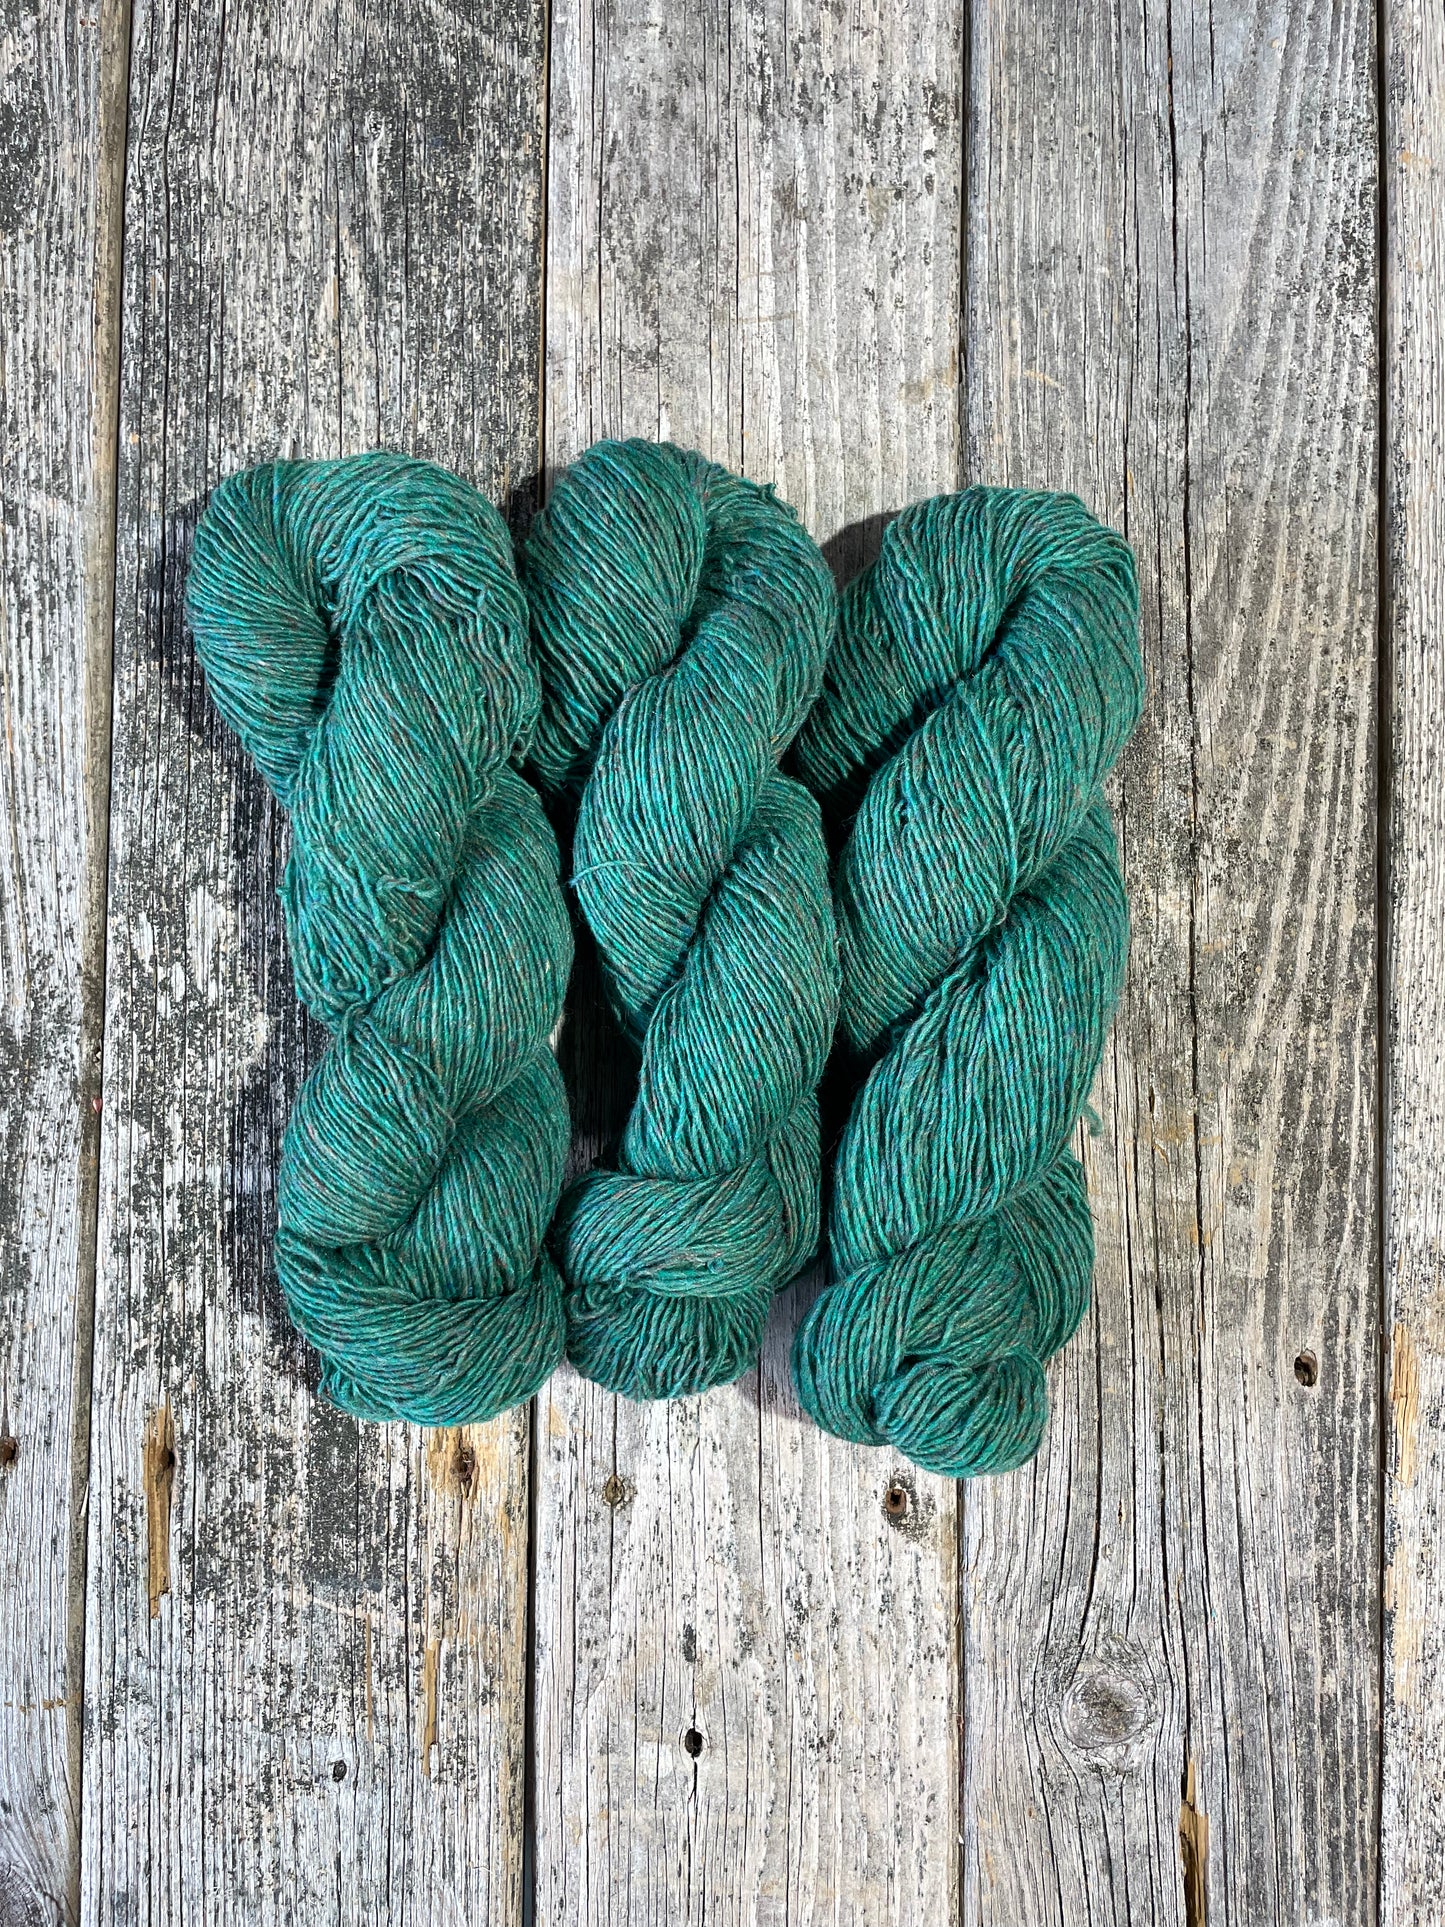 Briggs & Little Durasport: Forest Green - Maine Yarn & Fiber Supply